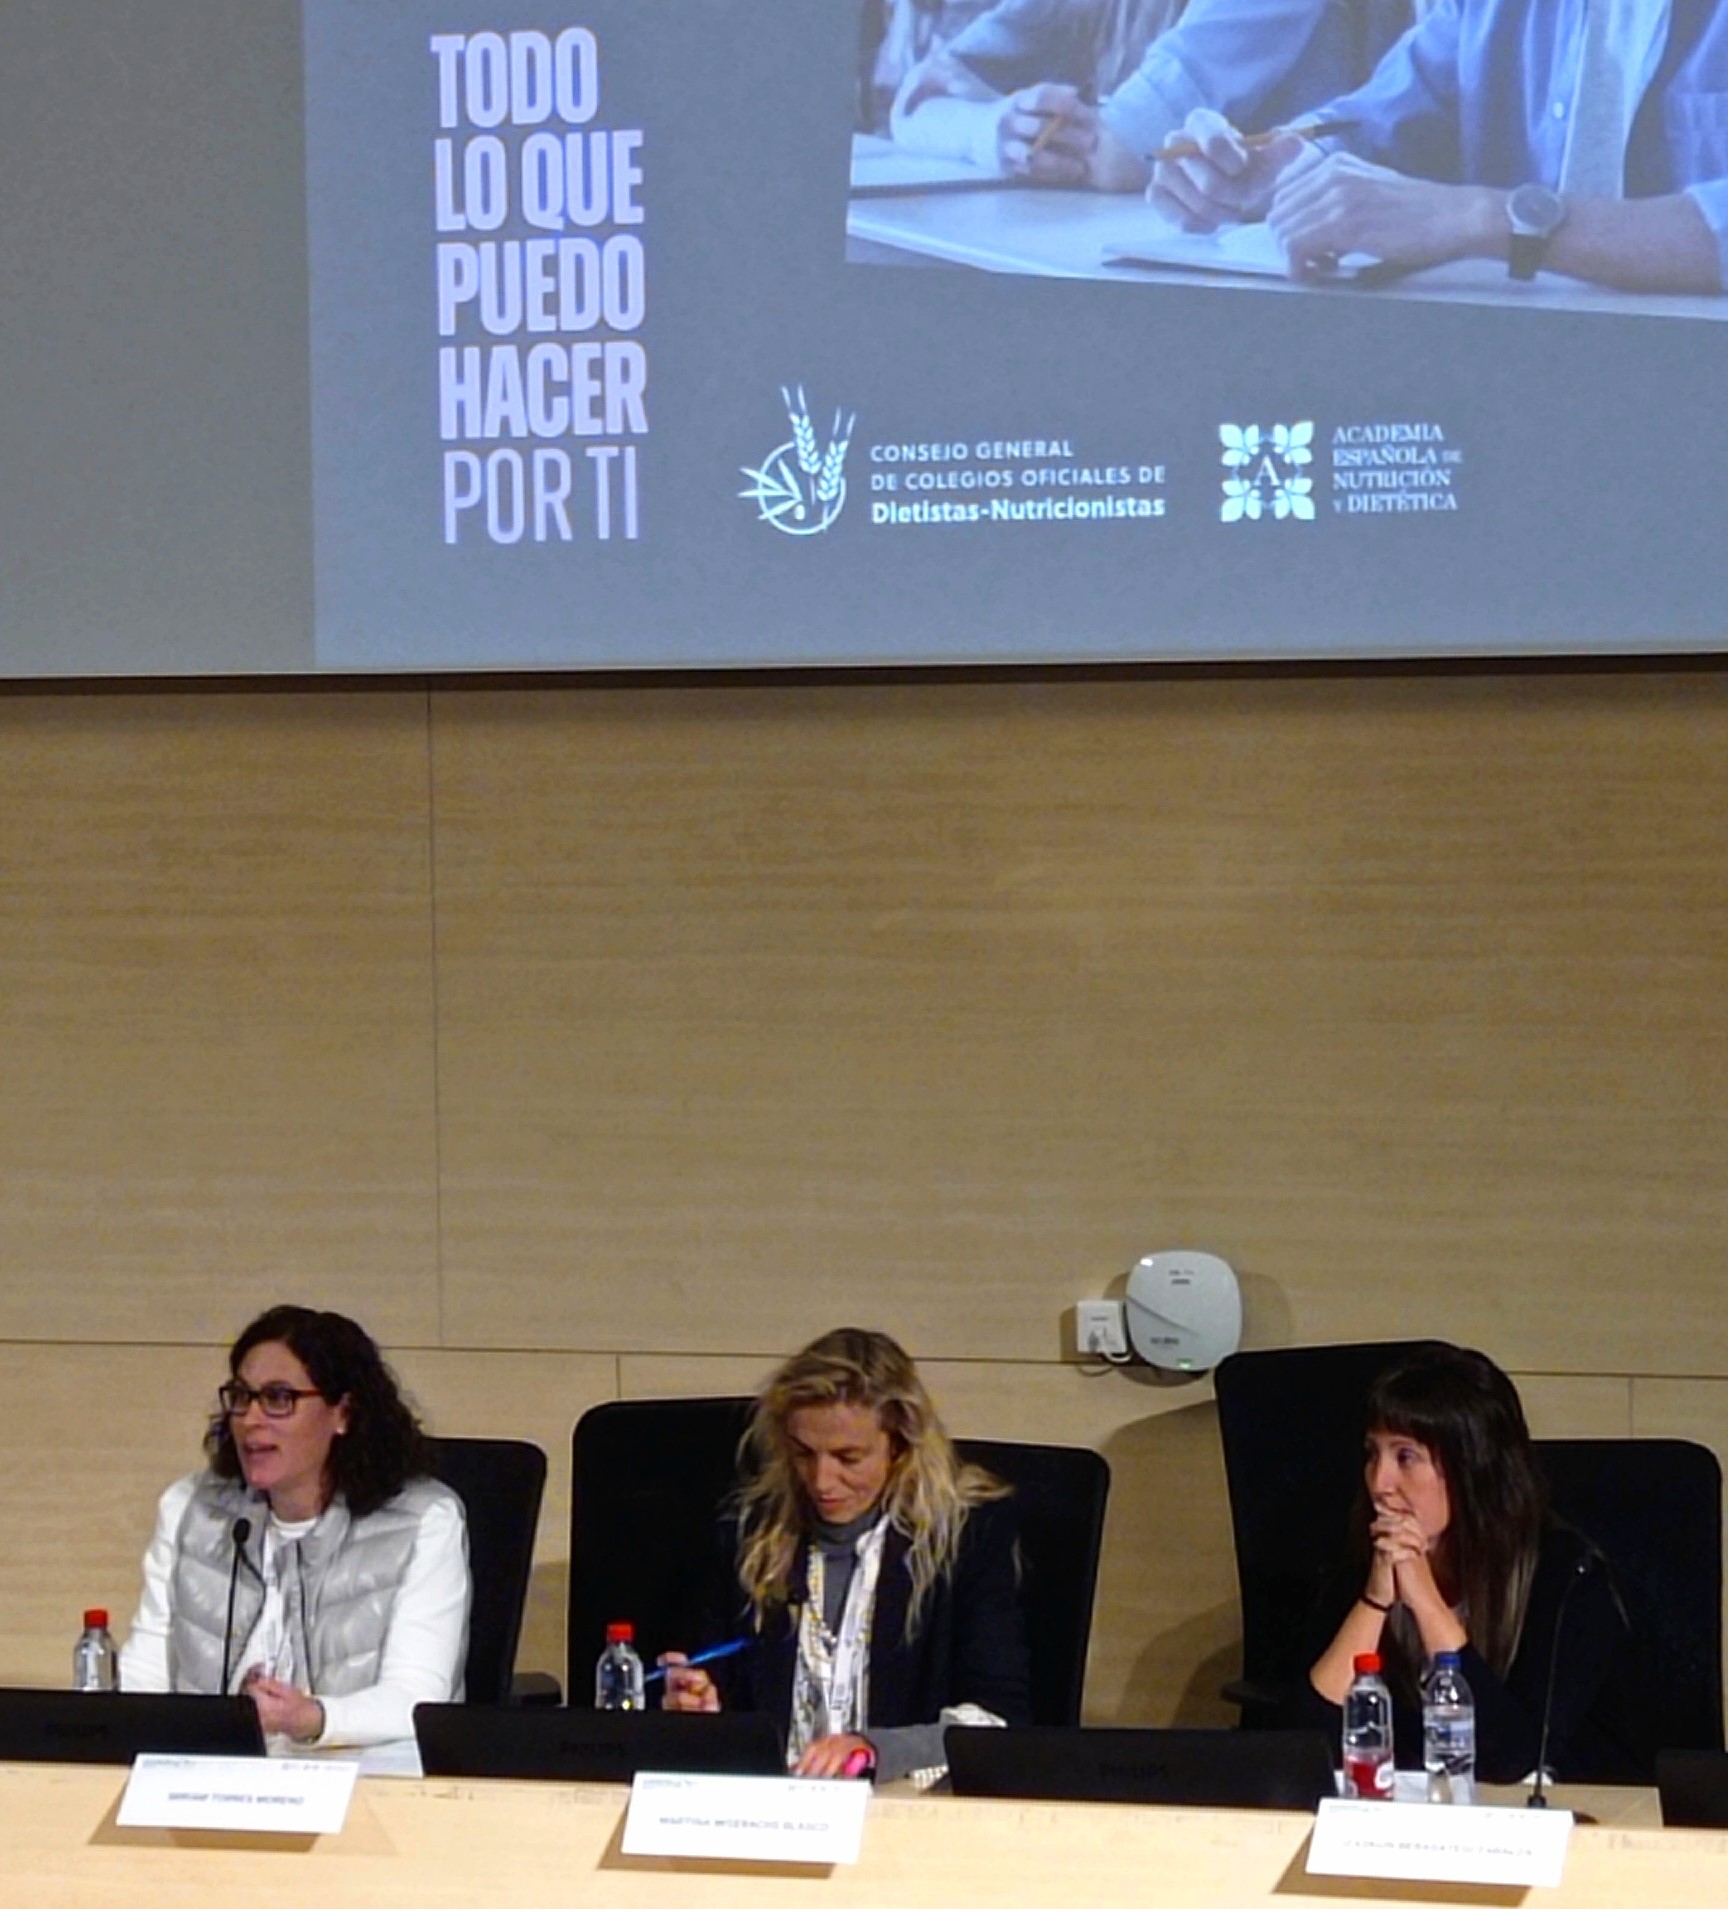 Professores de la FCSB participen al VI Congrés d’Alimentació, Nutrició i Dietètica a Barcelona